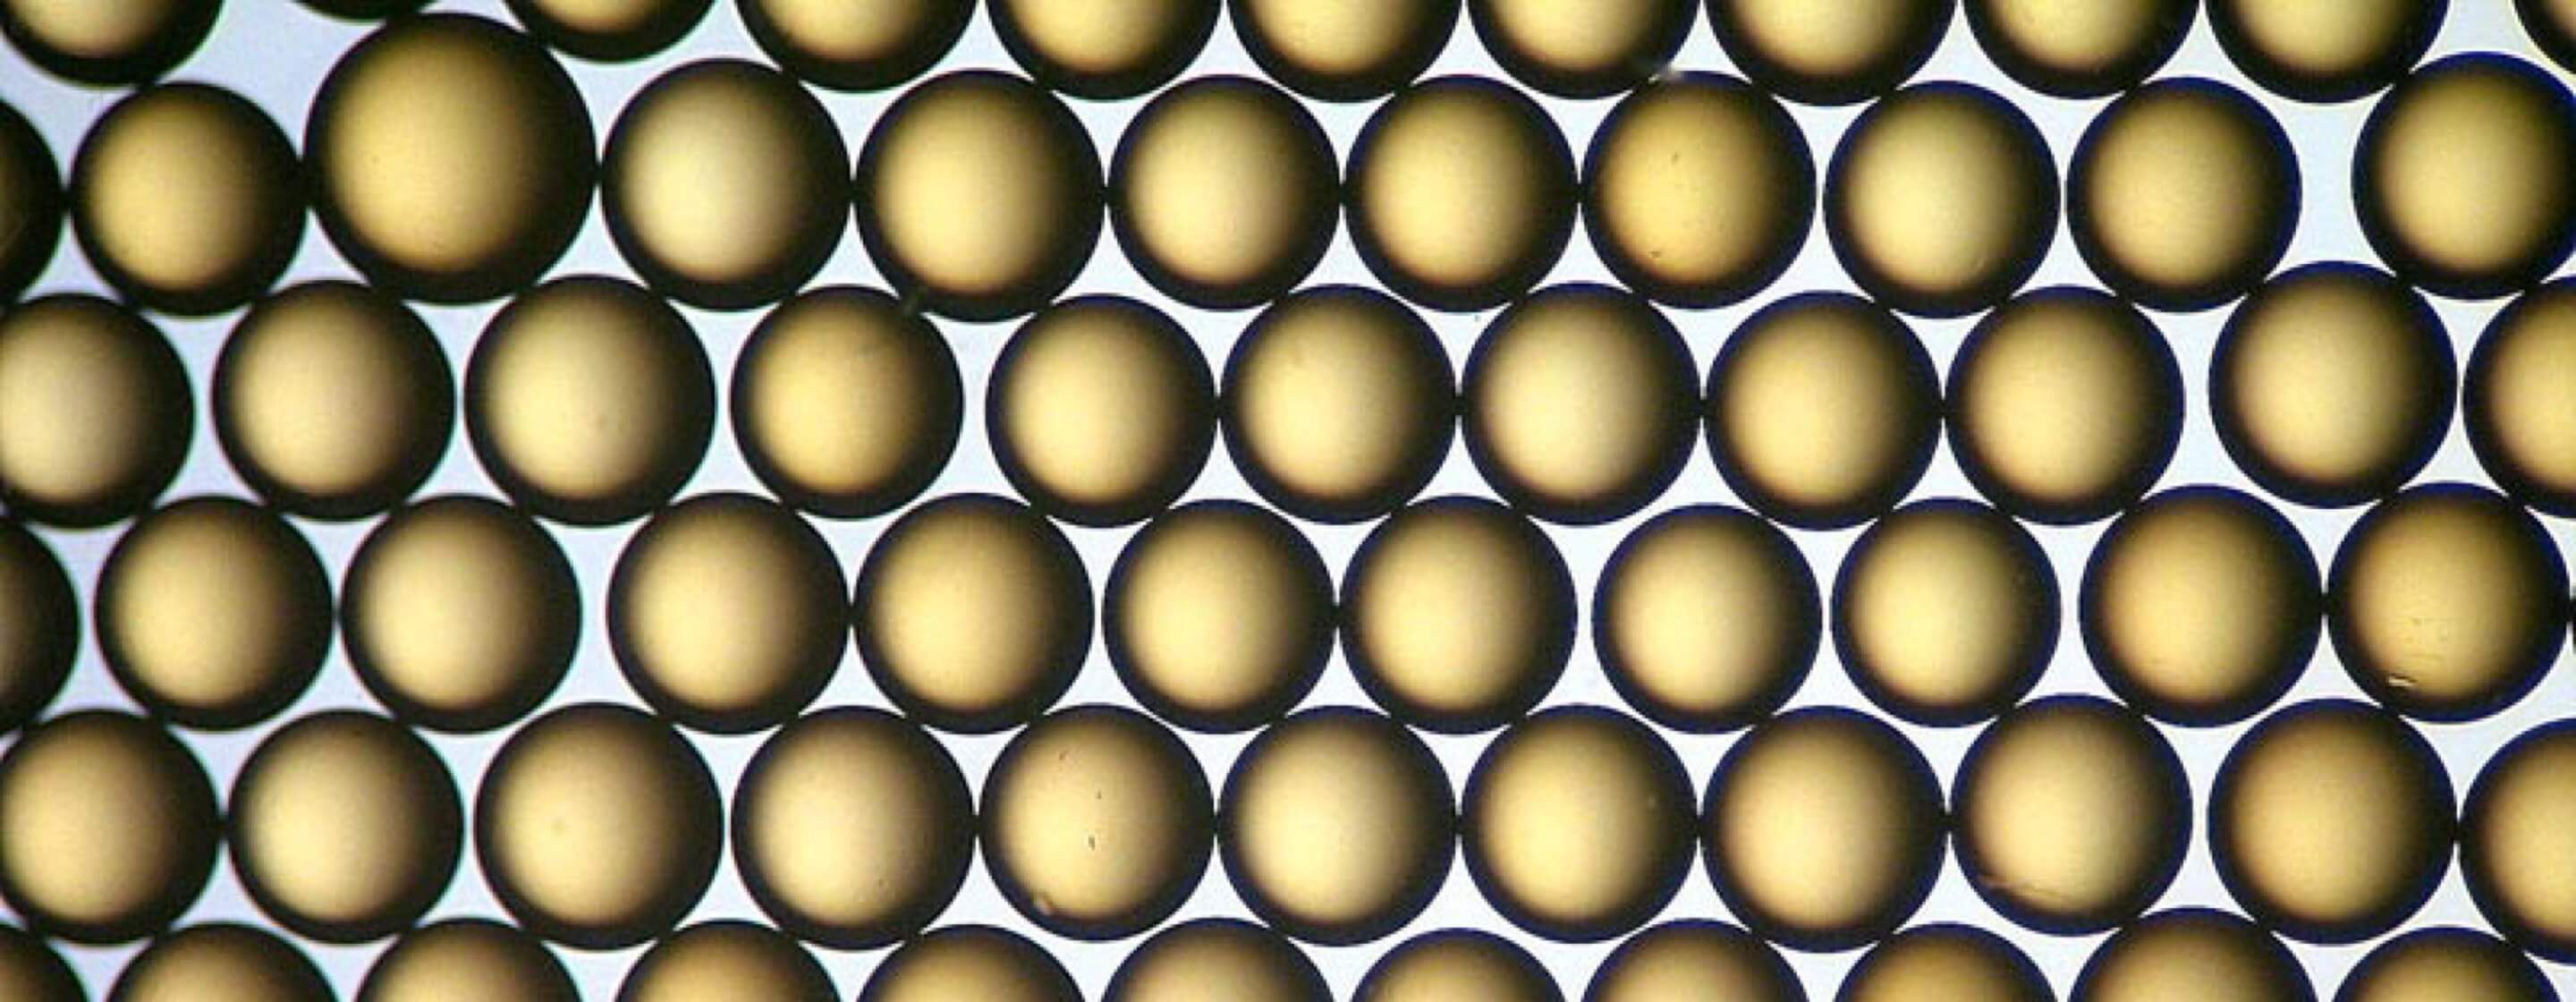  形似圓珠的琥珀色球形離子交換樹脂的顯微圖像。